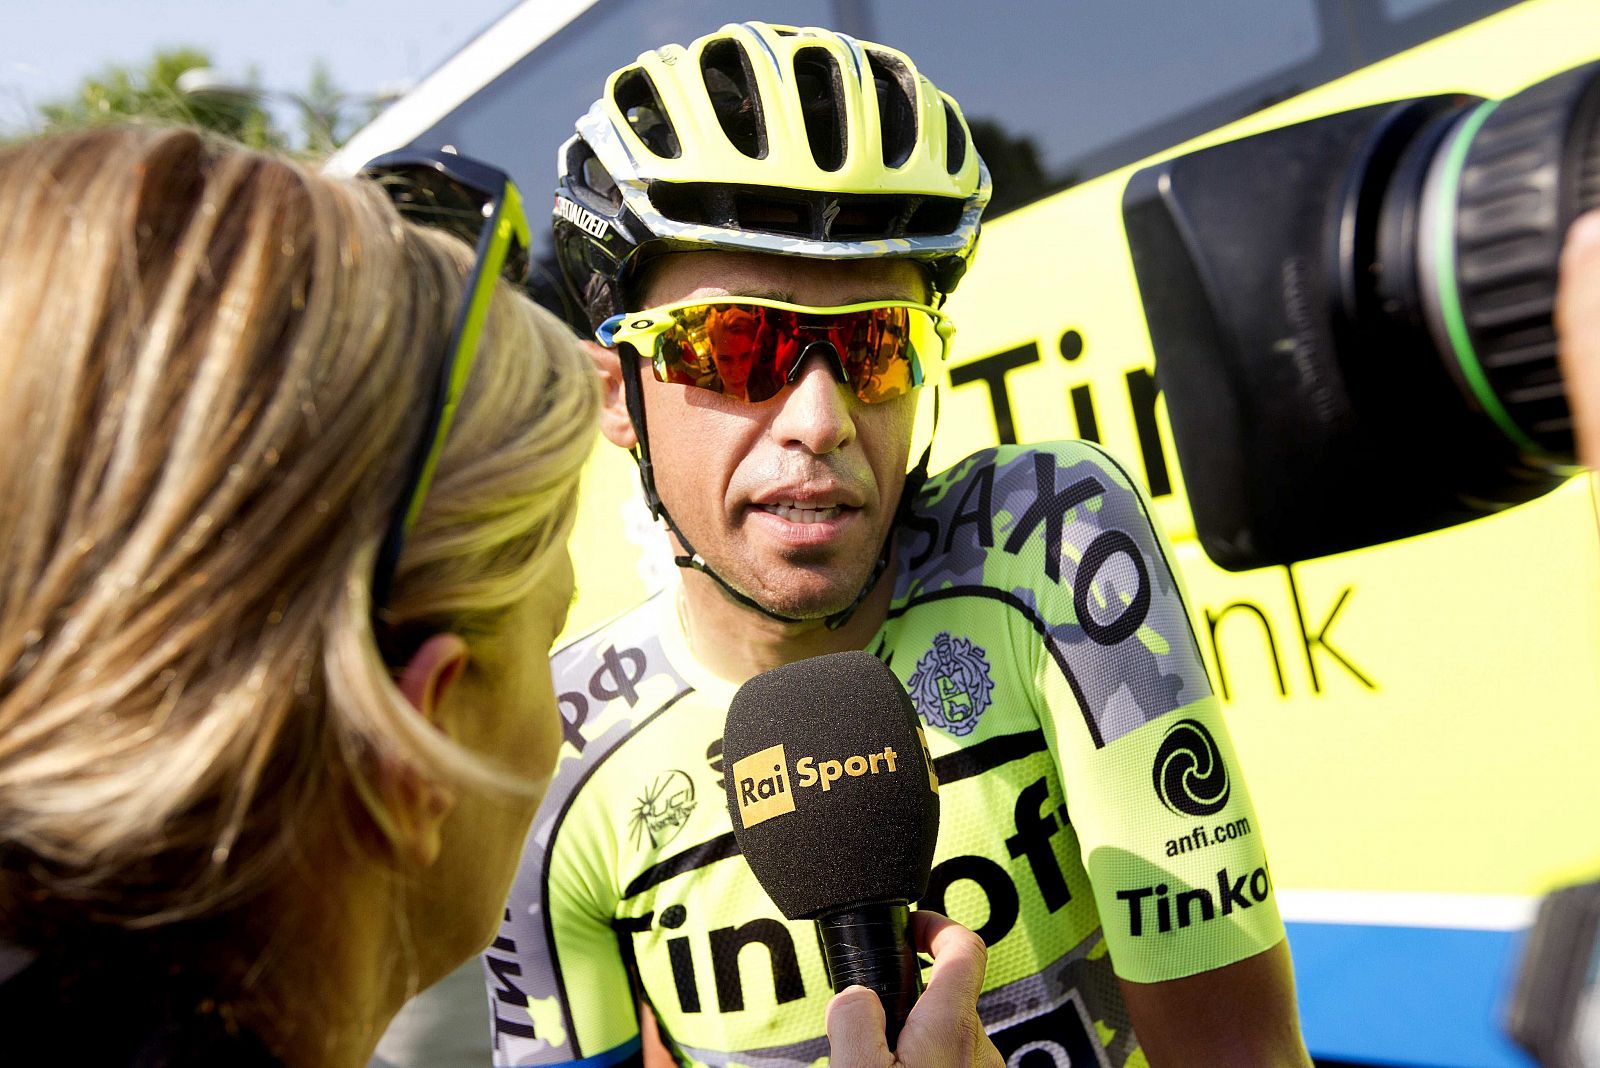 Alberto Contador, del equipo Tinkoff, atiende a la prensa durante la presentación de su equipo en Utrecht (Holanda).